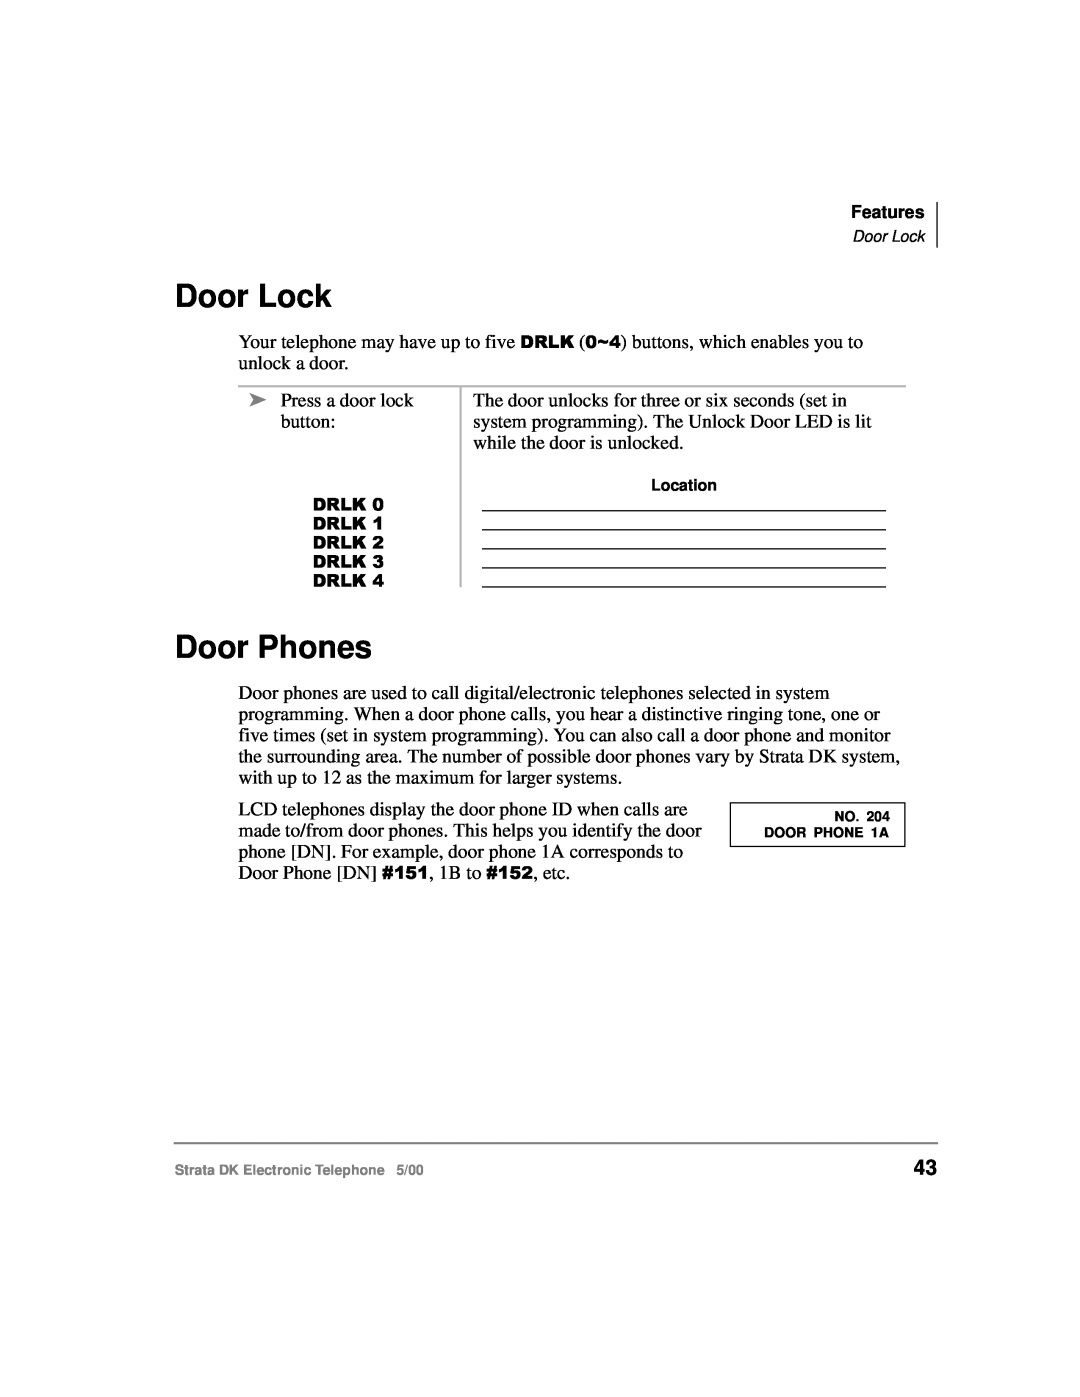 Toshiba Strata DK manual Door Lock, Door Phones 